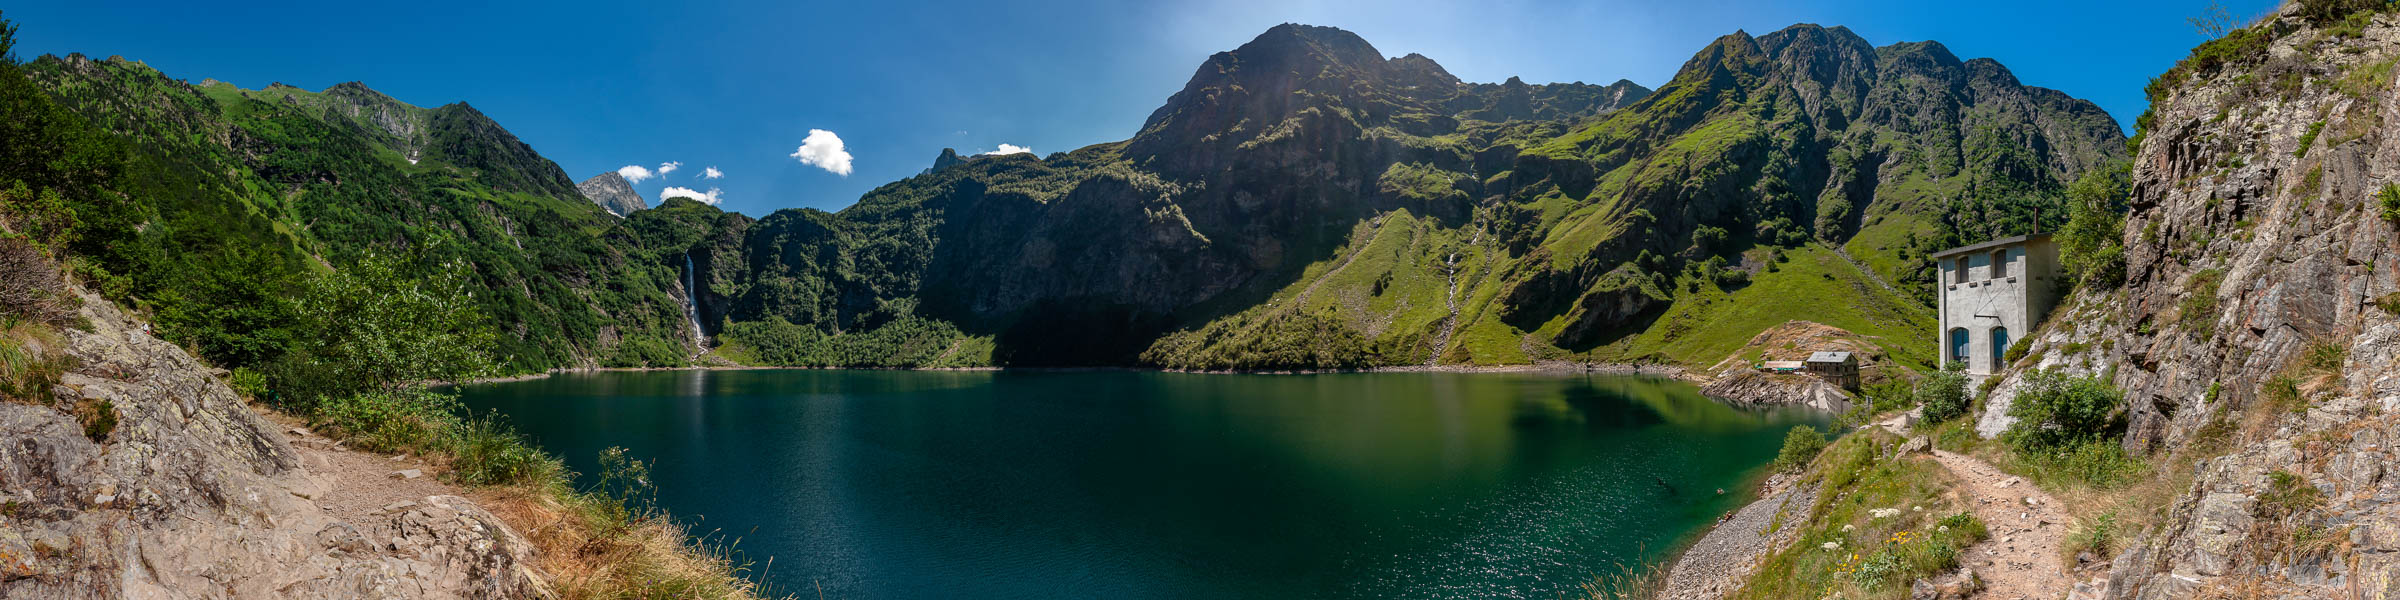 Lac et cascade d'Oô, 1504 m